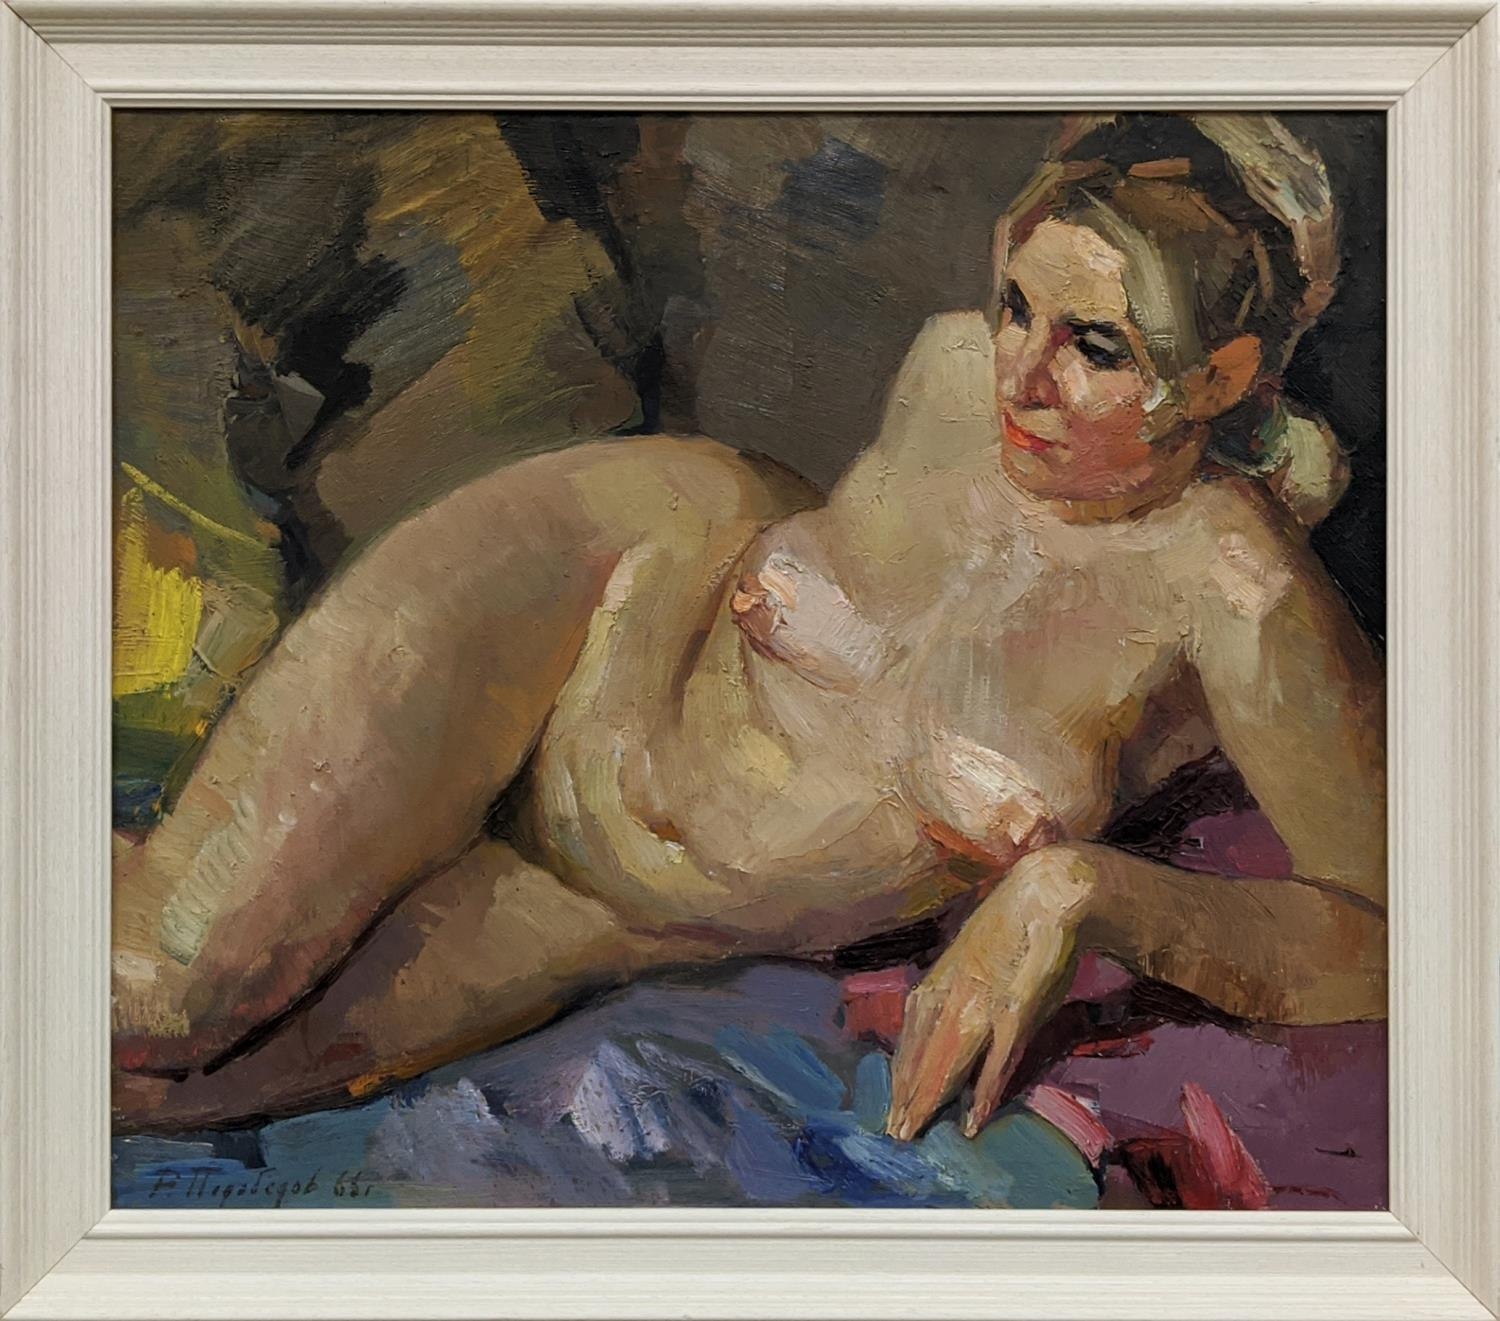 ROMAN PODOBEDOV (1920-2003), 'Model in the artist studio' 1966, oil on canvas, 60cm x 70cm.